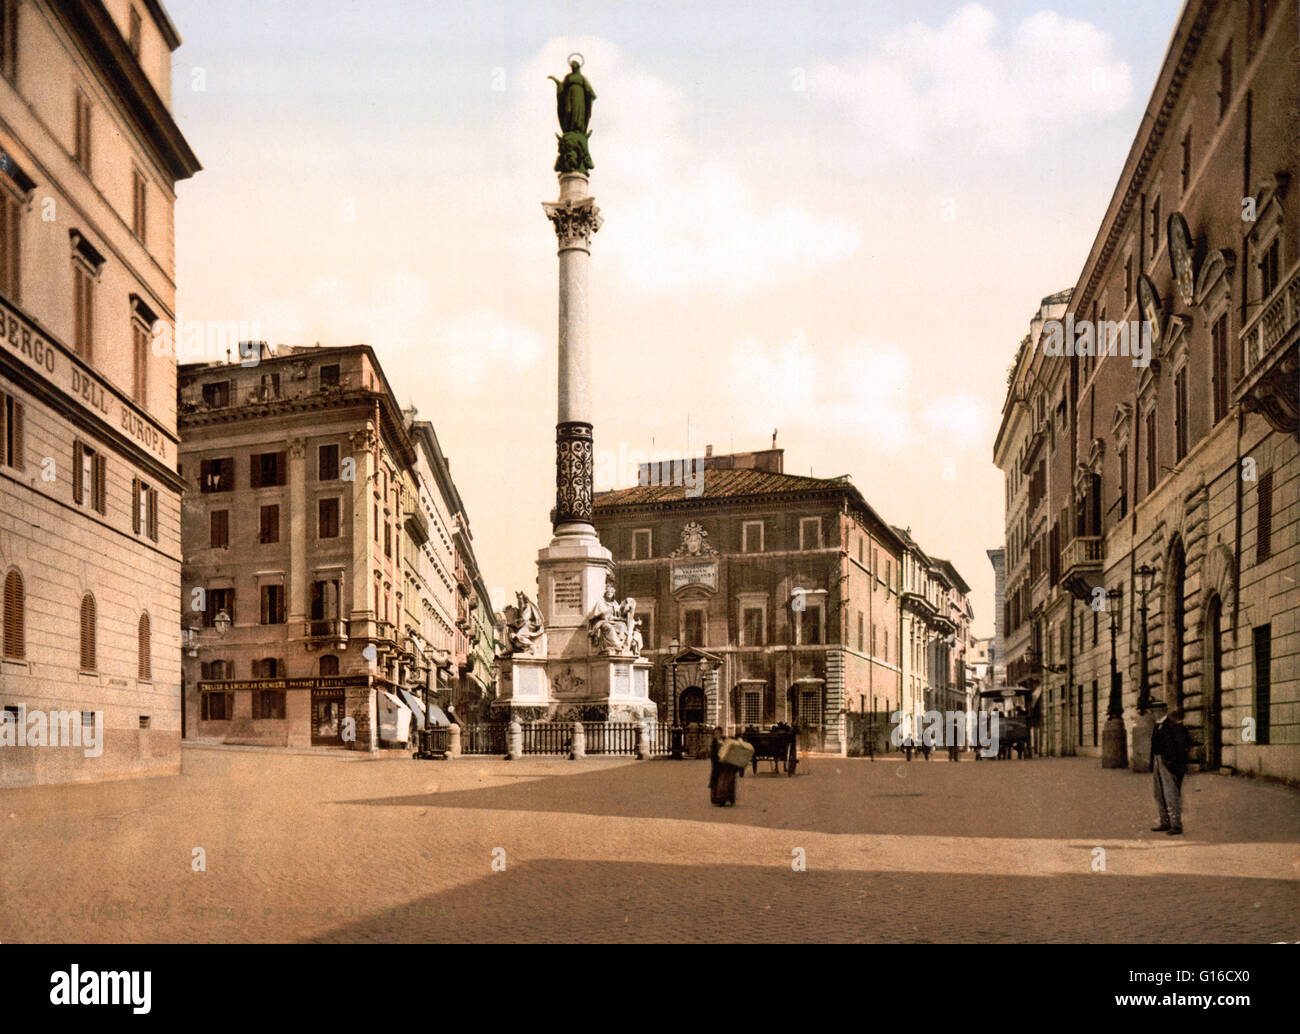 Die Spalte von der Unbefleckten Empfängnis oder la Colonna Immacolata ist ein 19. Jahrhundert-Denkmal im Zentrum von Rom, befindet sich in der Piazza Mignanelli, die Süd-West-Ausdehnung der Piazza di Spagna. Das Denkmal wurde entworfen von dem Architekten Luigi Poletti und c Stockfoto